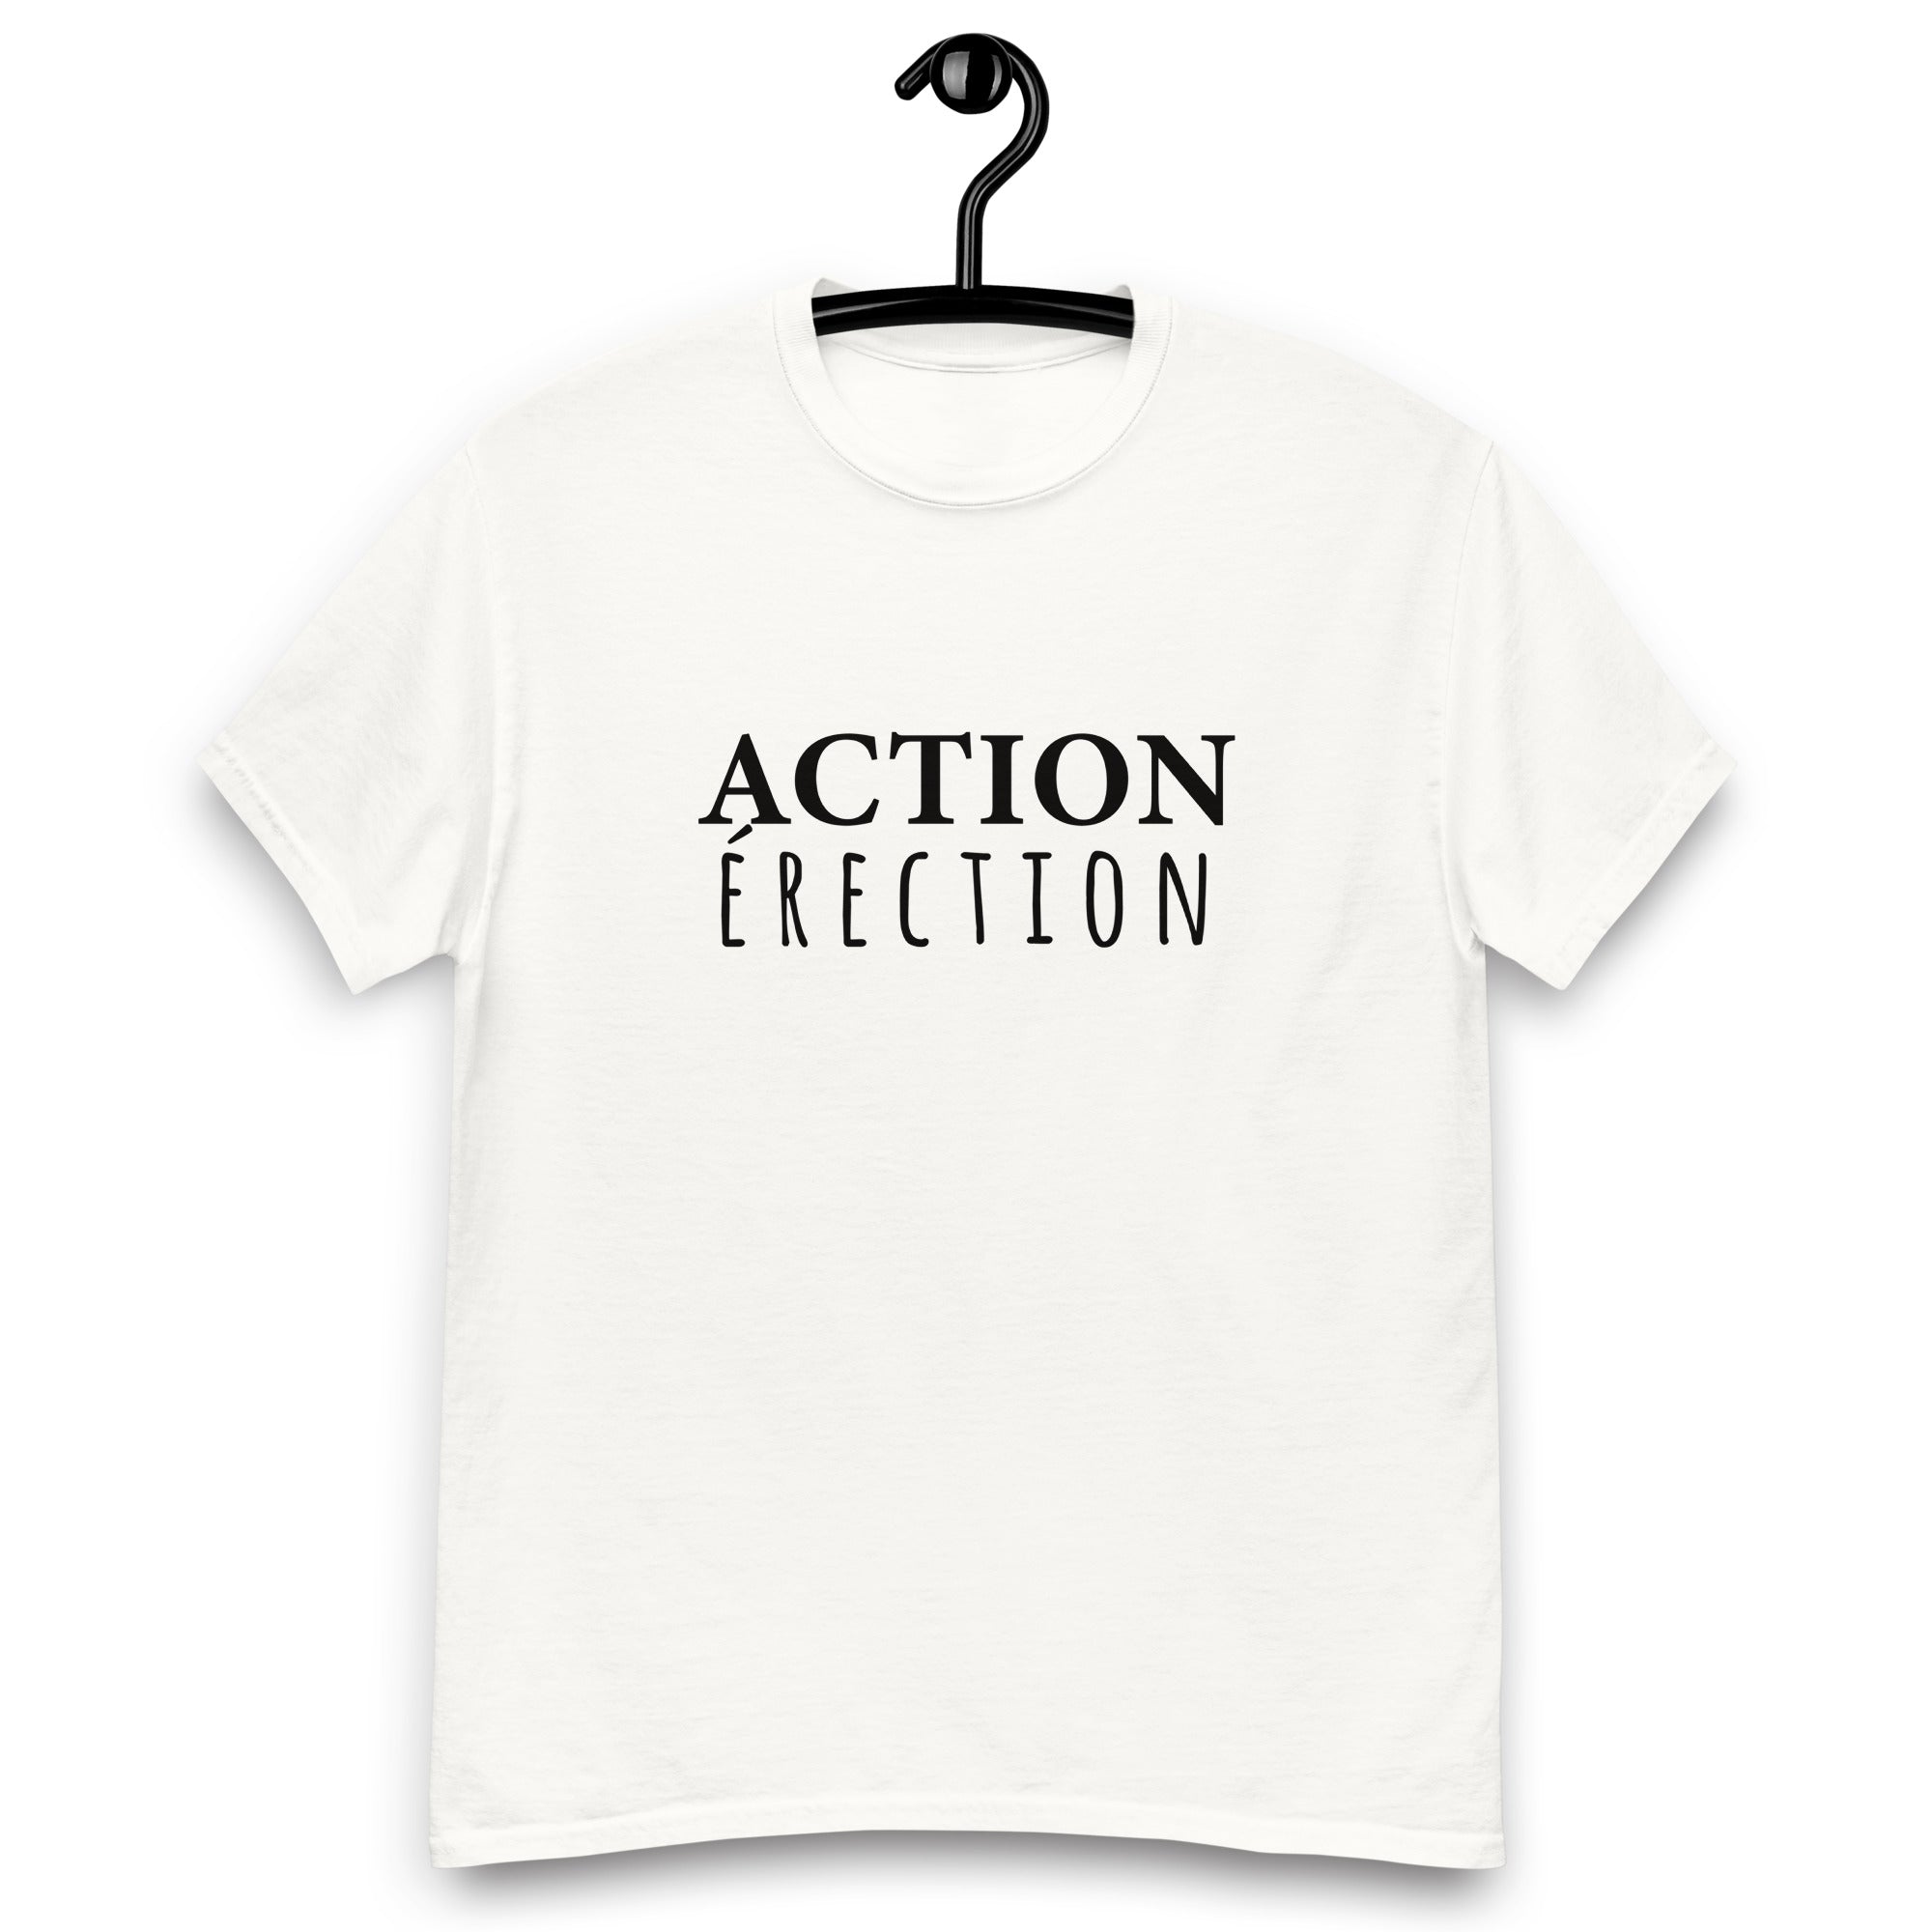 Action érection - T-shirt classique homme